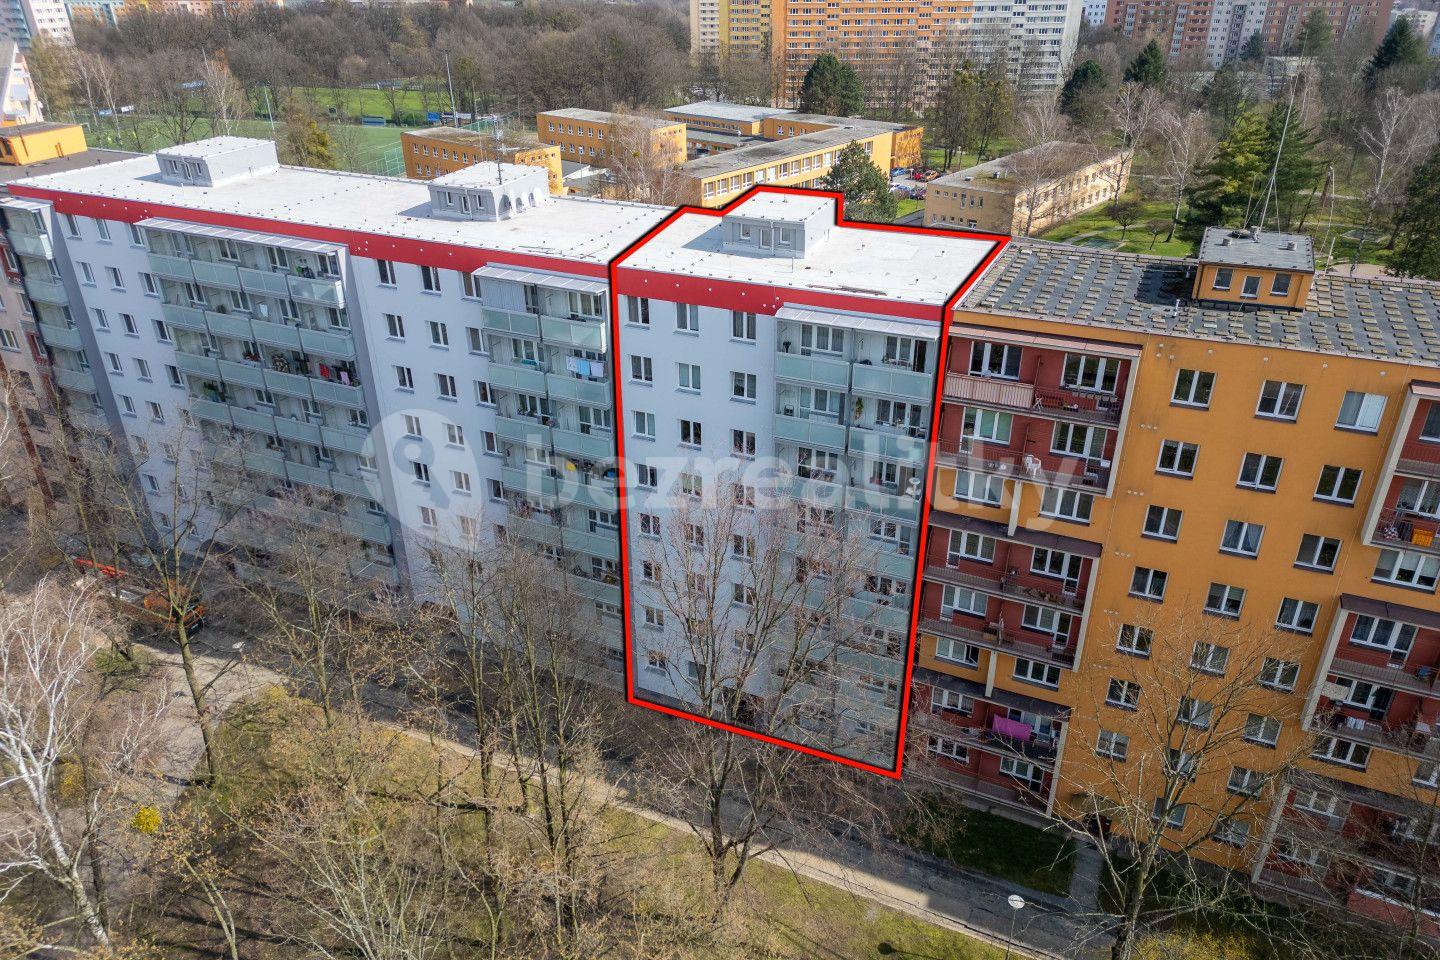 3 bedroom flat for sale, 61 m², Jana Šoupala, Ostrava, Moravskoslezský Region